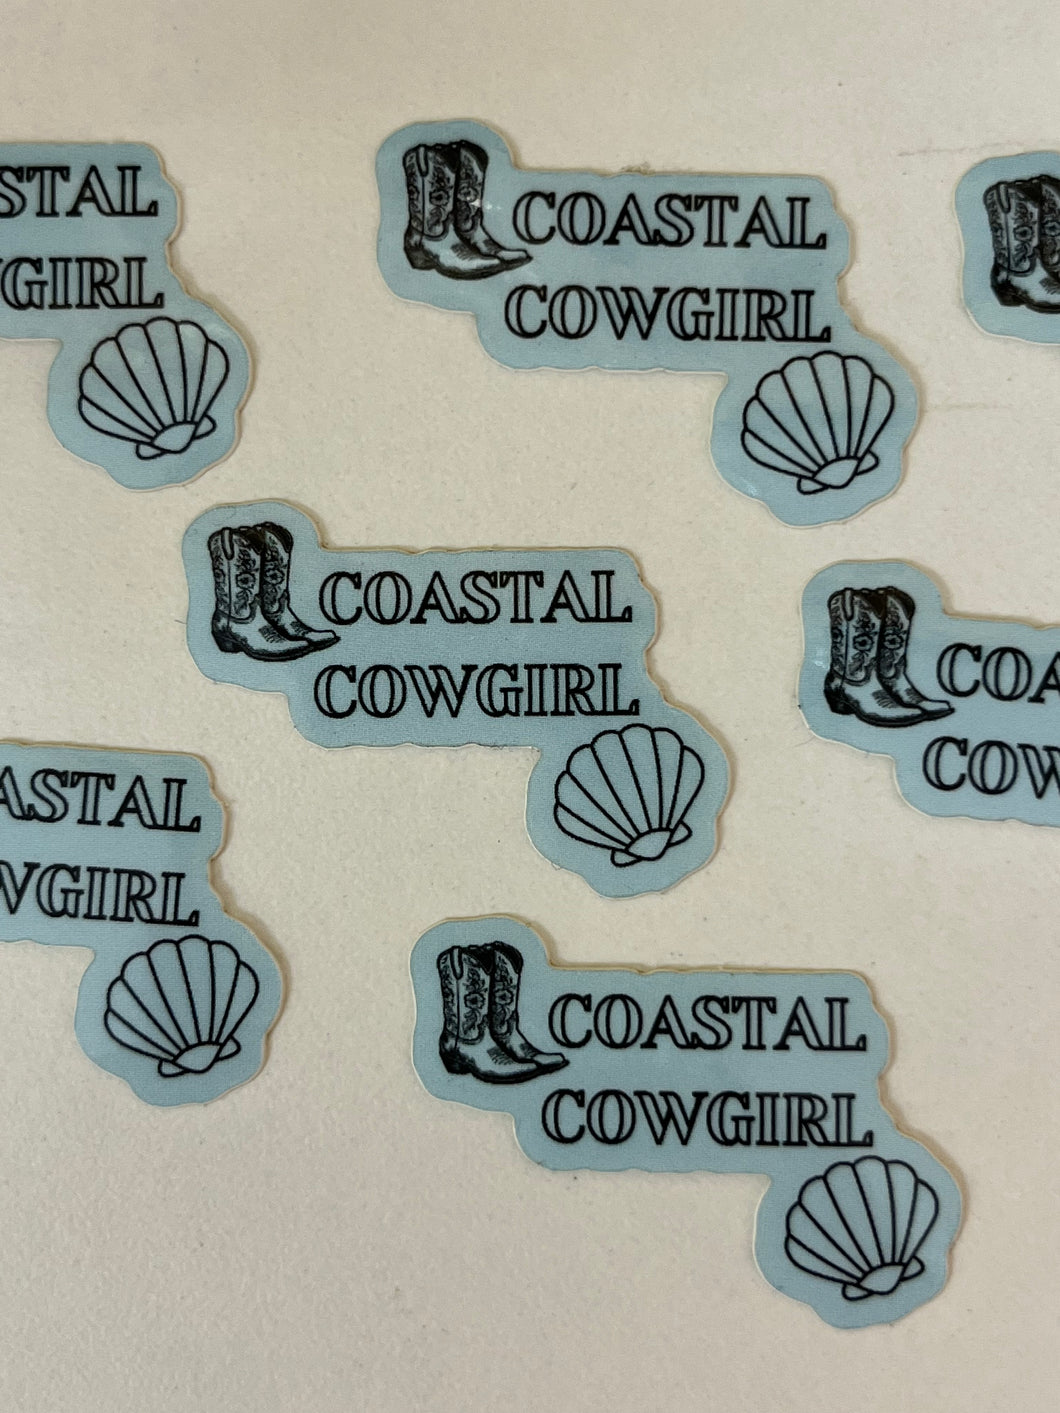 Coastal cowgirl sticker